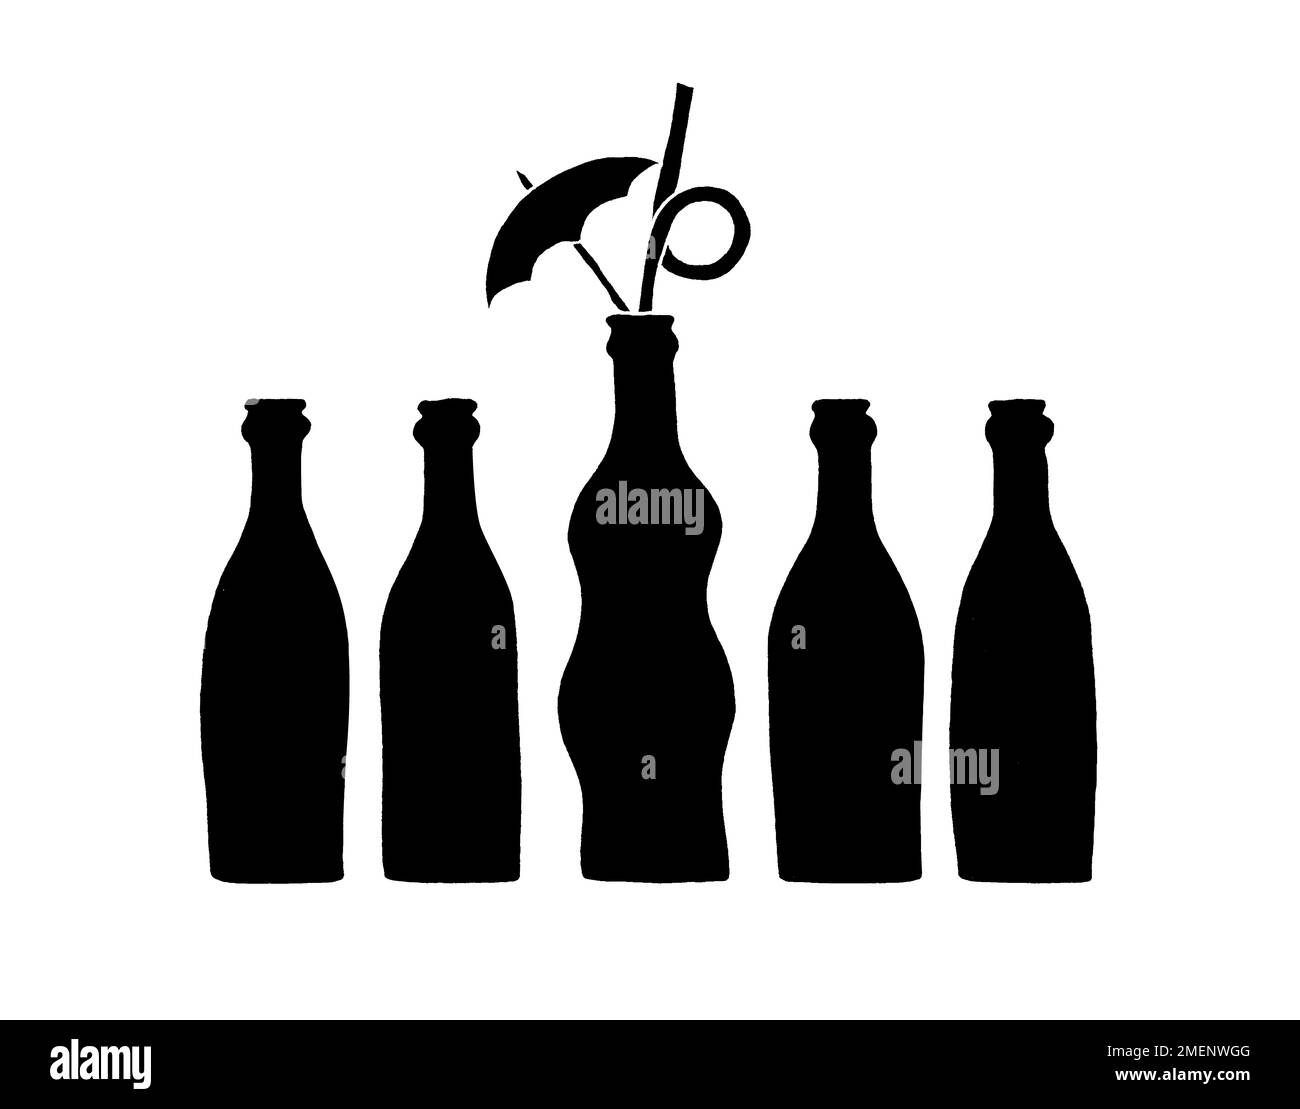 Immagine in bianco e nero di una fila di bottiglie con quella al centro in primo piano Foto Stock